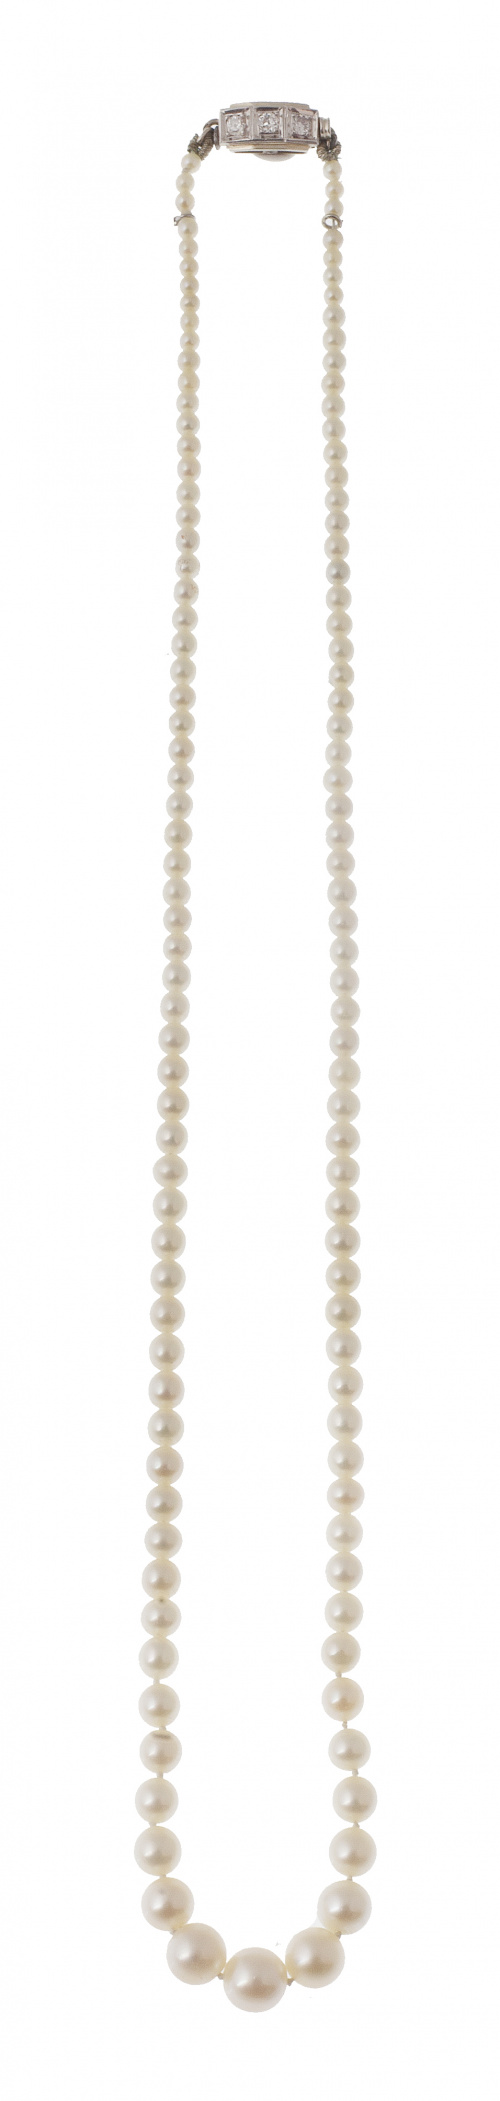 Delicado collar de perlas de pp. S. XX con tamaño creciente